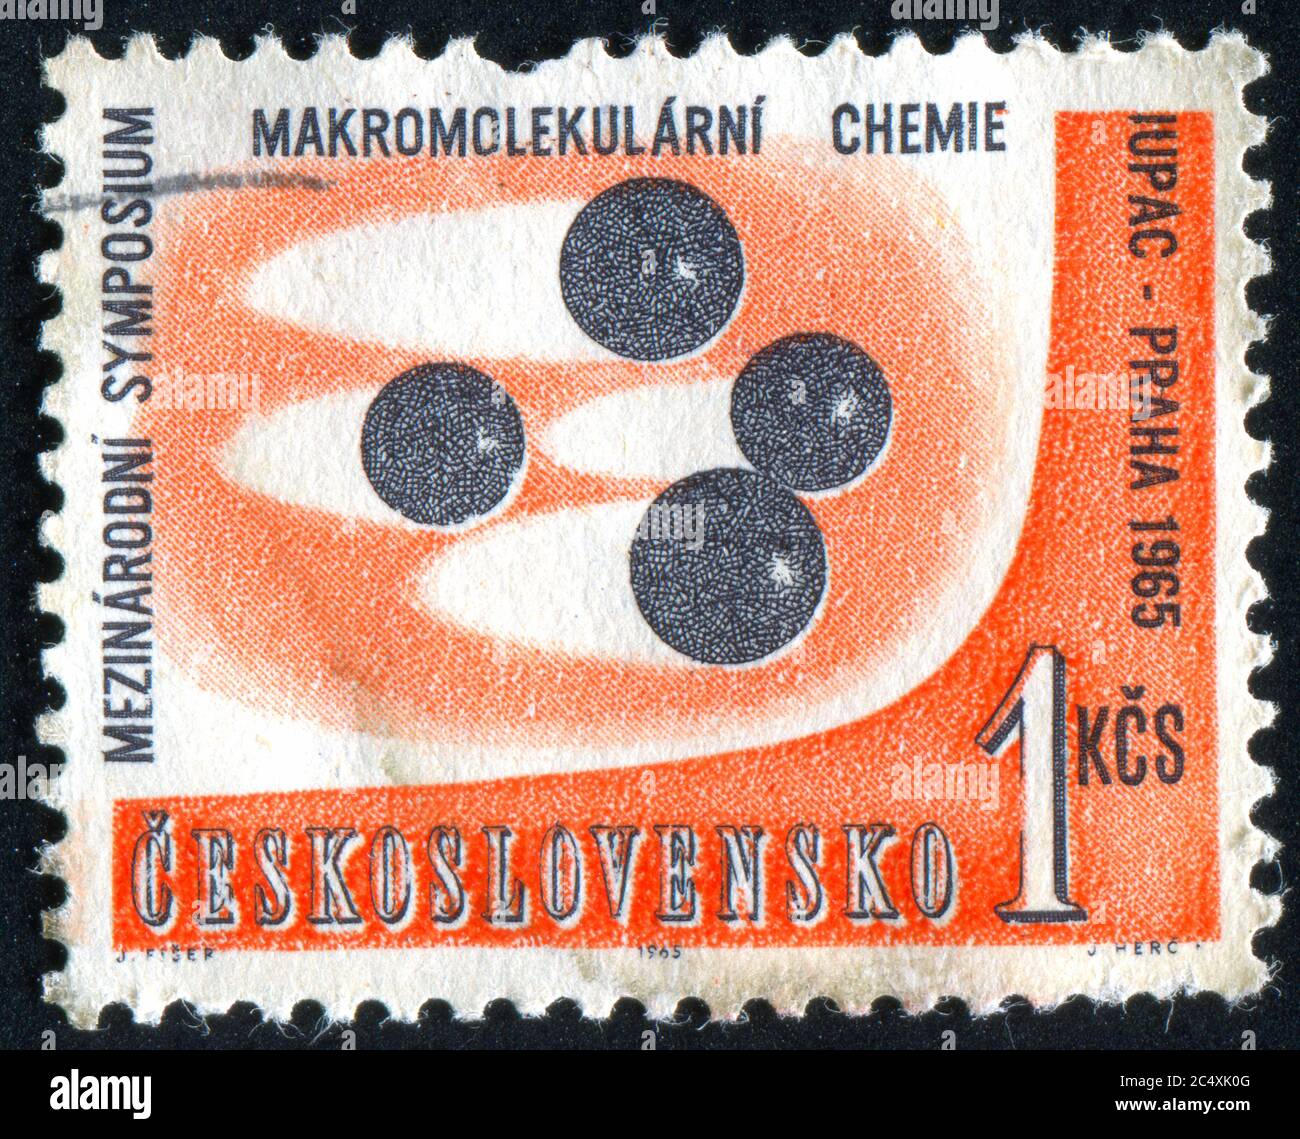 CECOSLOVACCHIA - CIRCA 1965: Stampato dalla Cecoslovacchia, mostra macromolecolare Simposio Emblem, circa 1965 Foto Stock